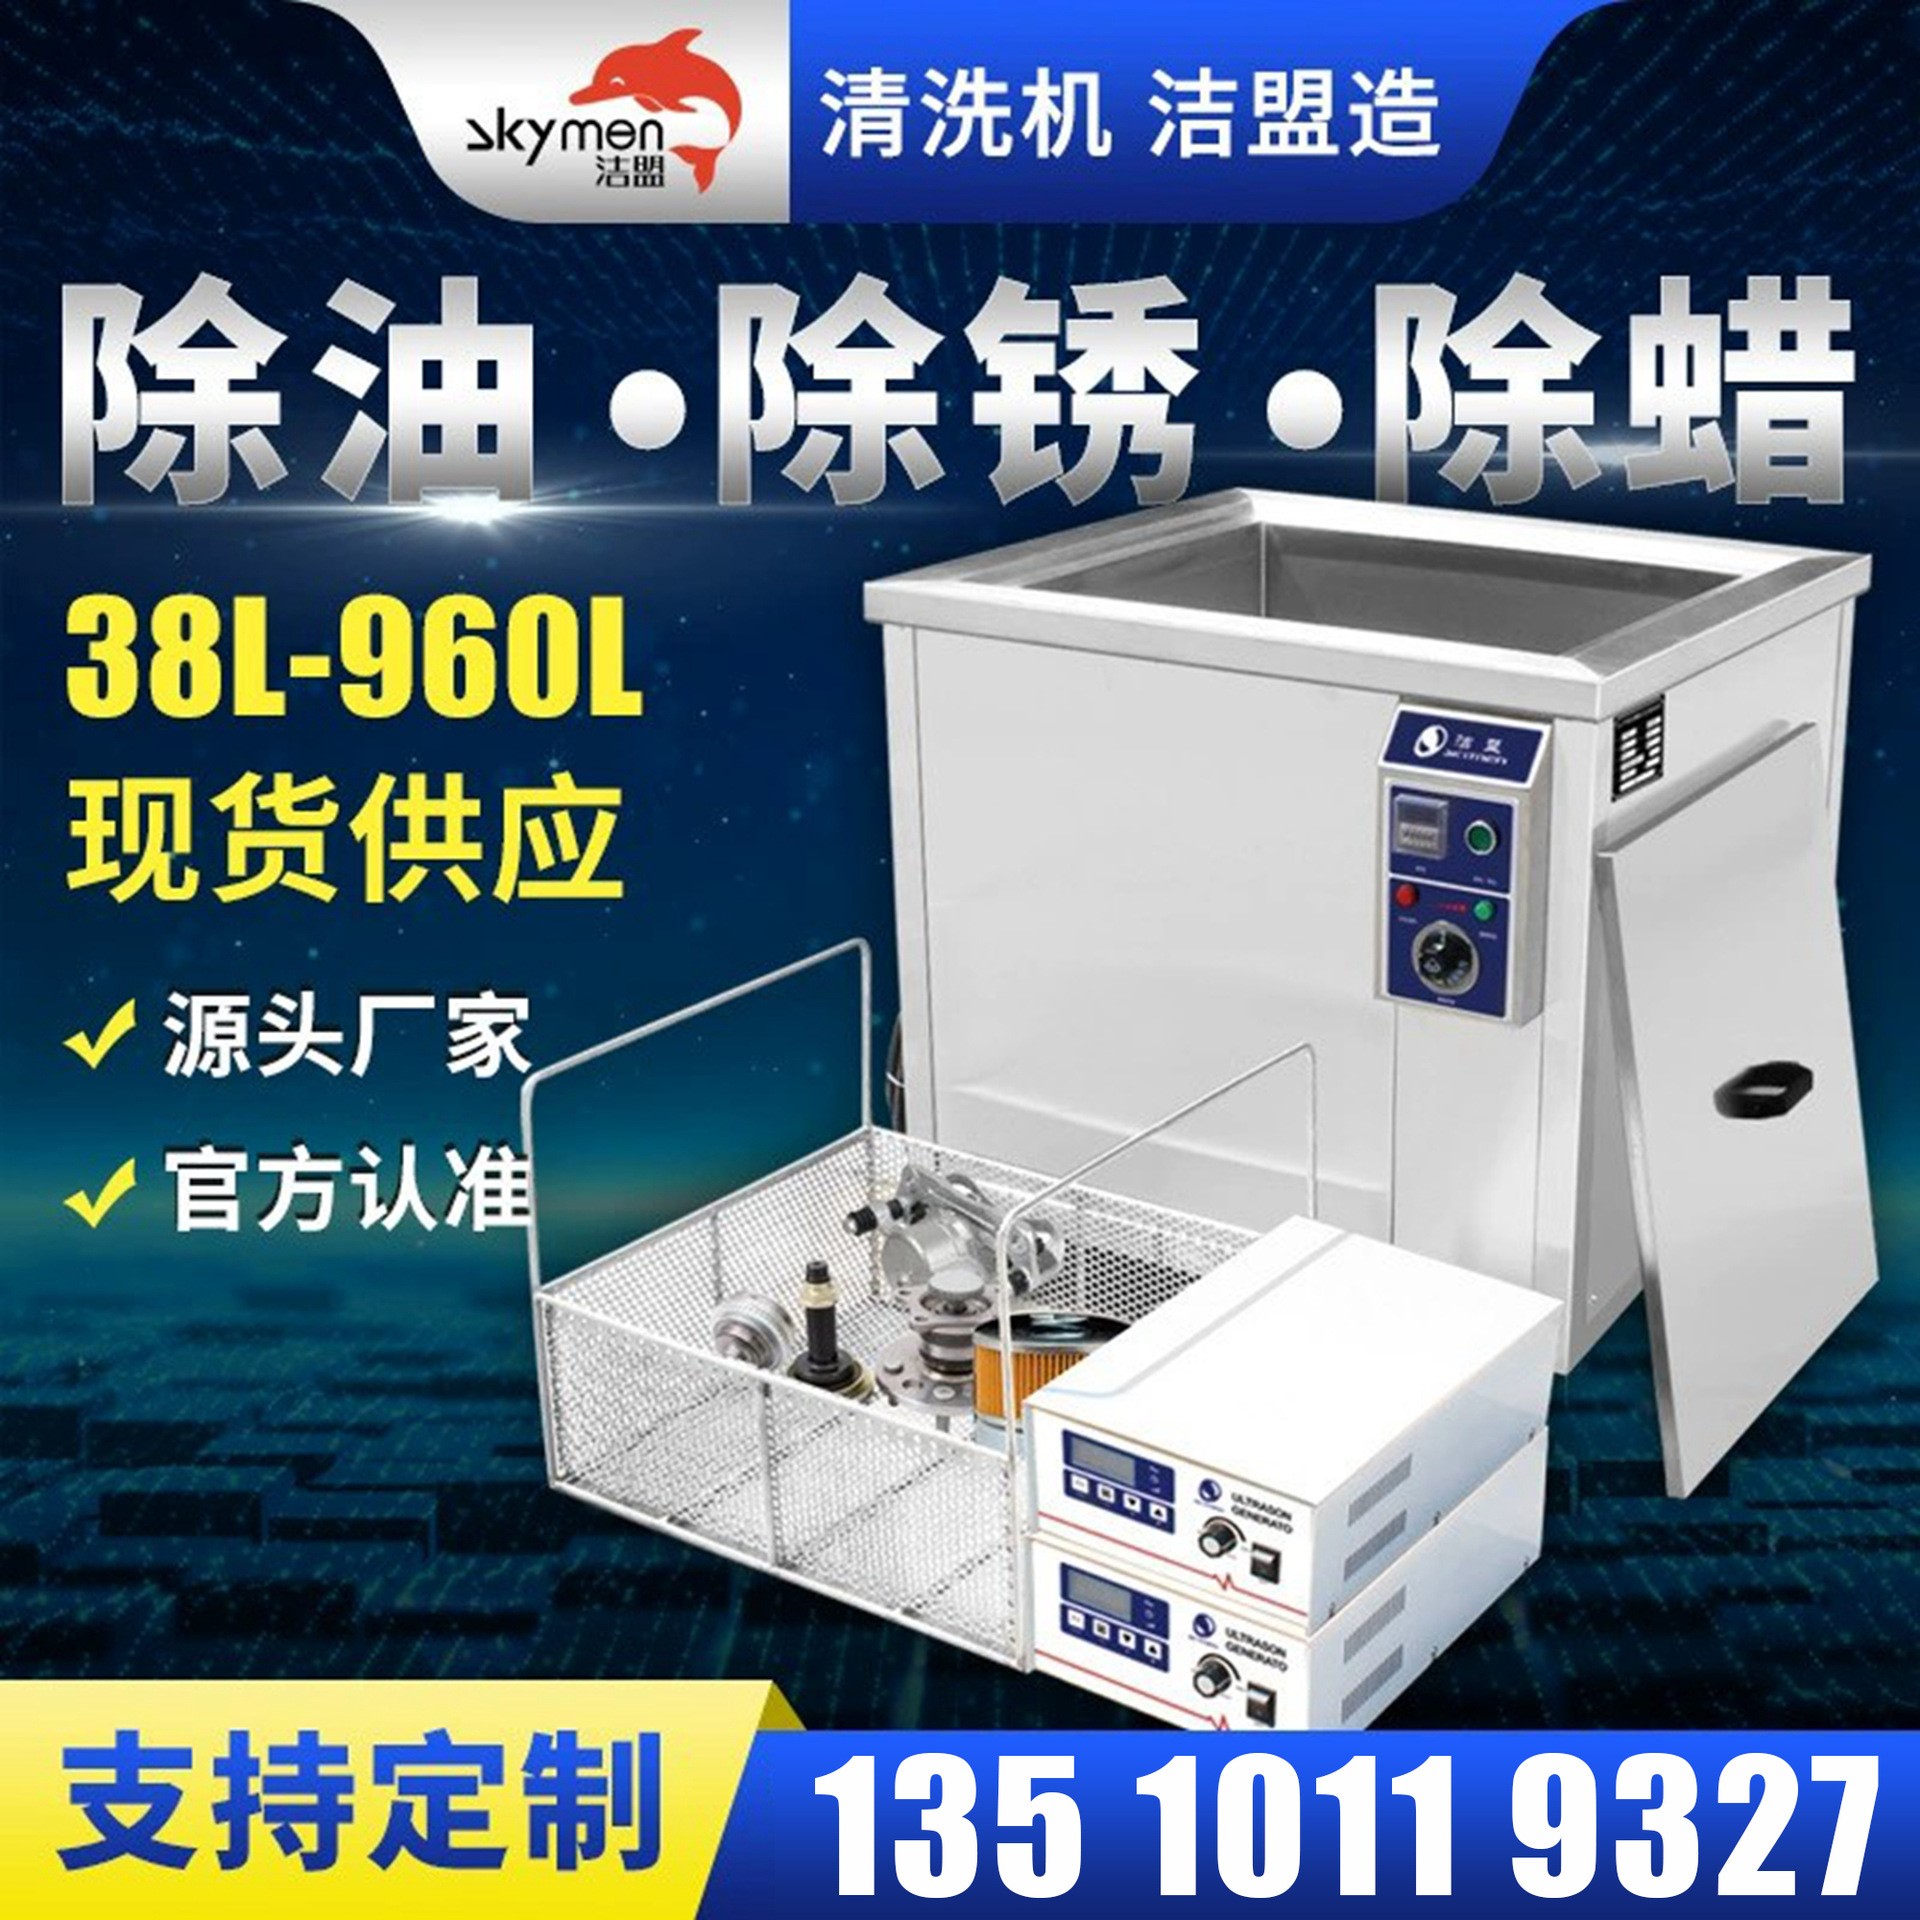 五金部件 机械维修用清洗设备 超声波清洗机 洁盟JTS-1018